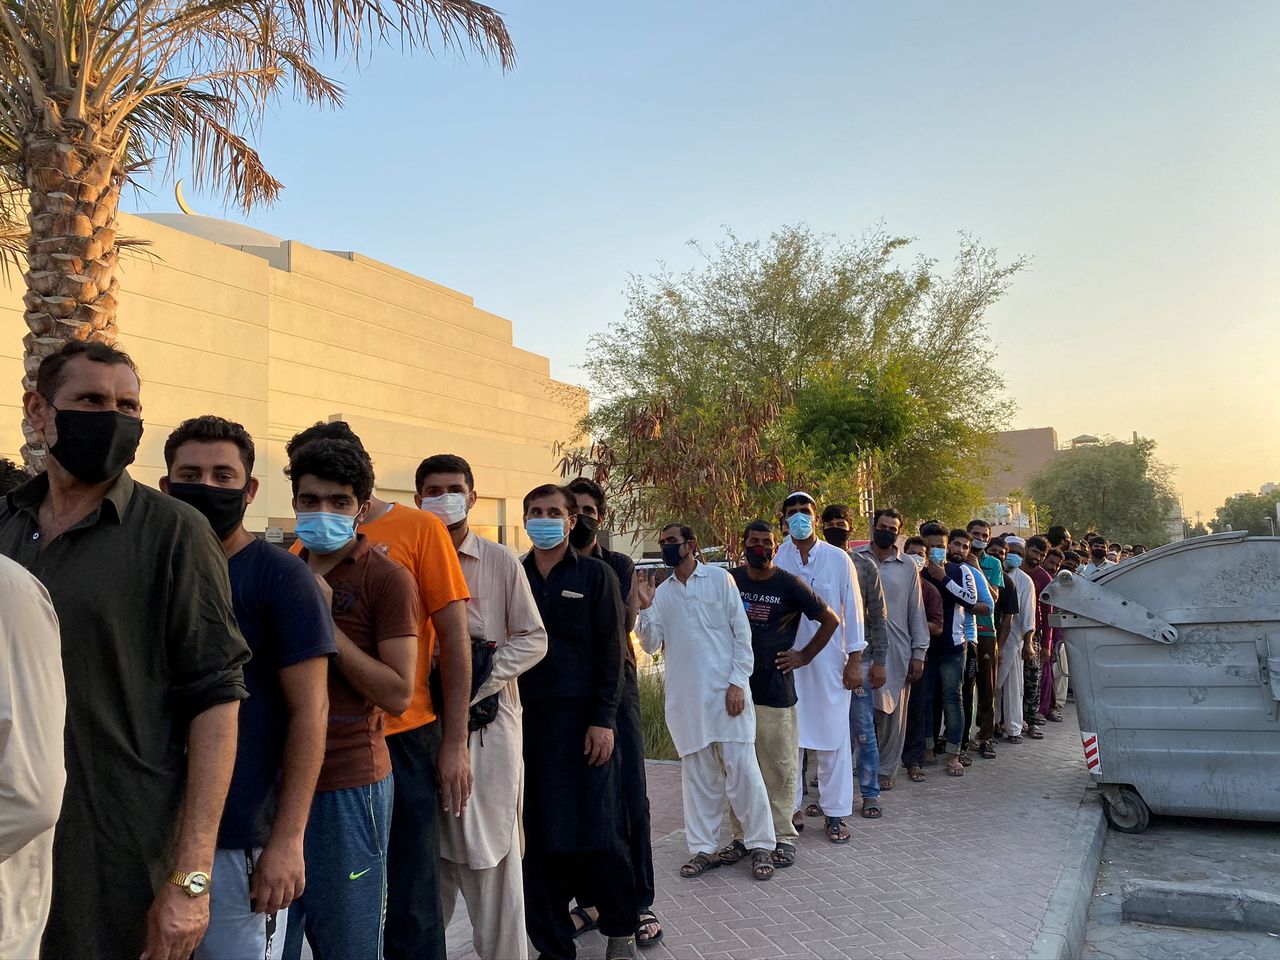 صورة من أرشيف رويترز لرجال يصطفون للحصول على تبرعات في دبي بعد أن فقدوا وظائفهم بسبب فيروس كورونا.